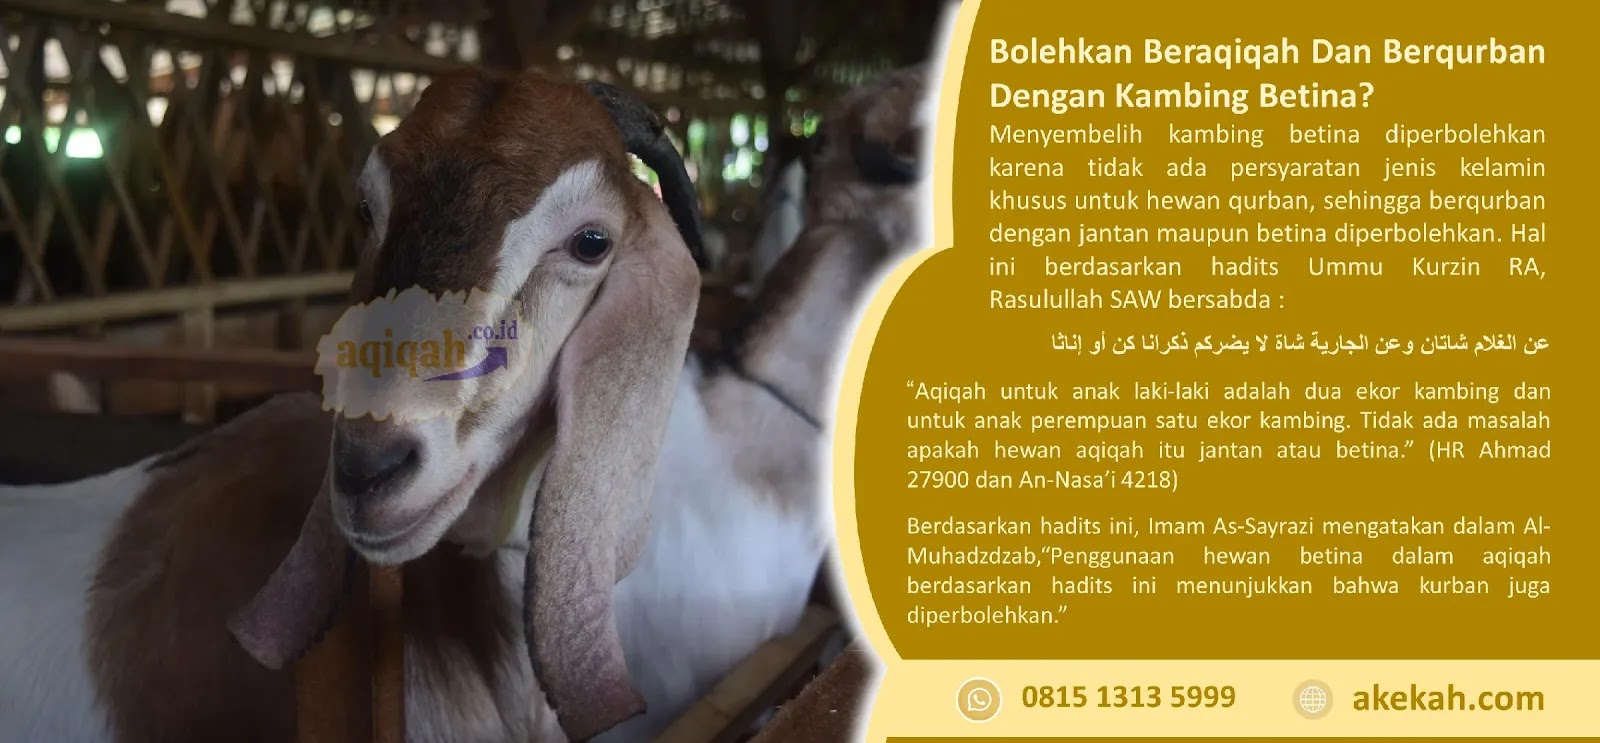 Harga Catering Akikah Purwosari Gunungkidul DI Yogyakarta